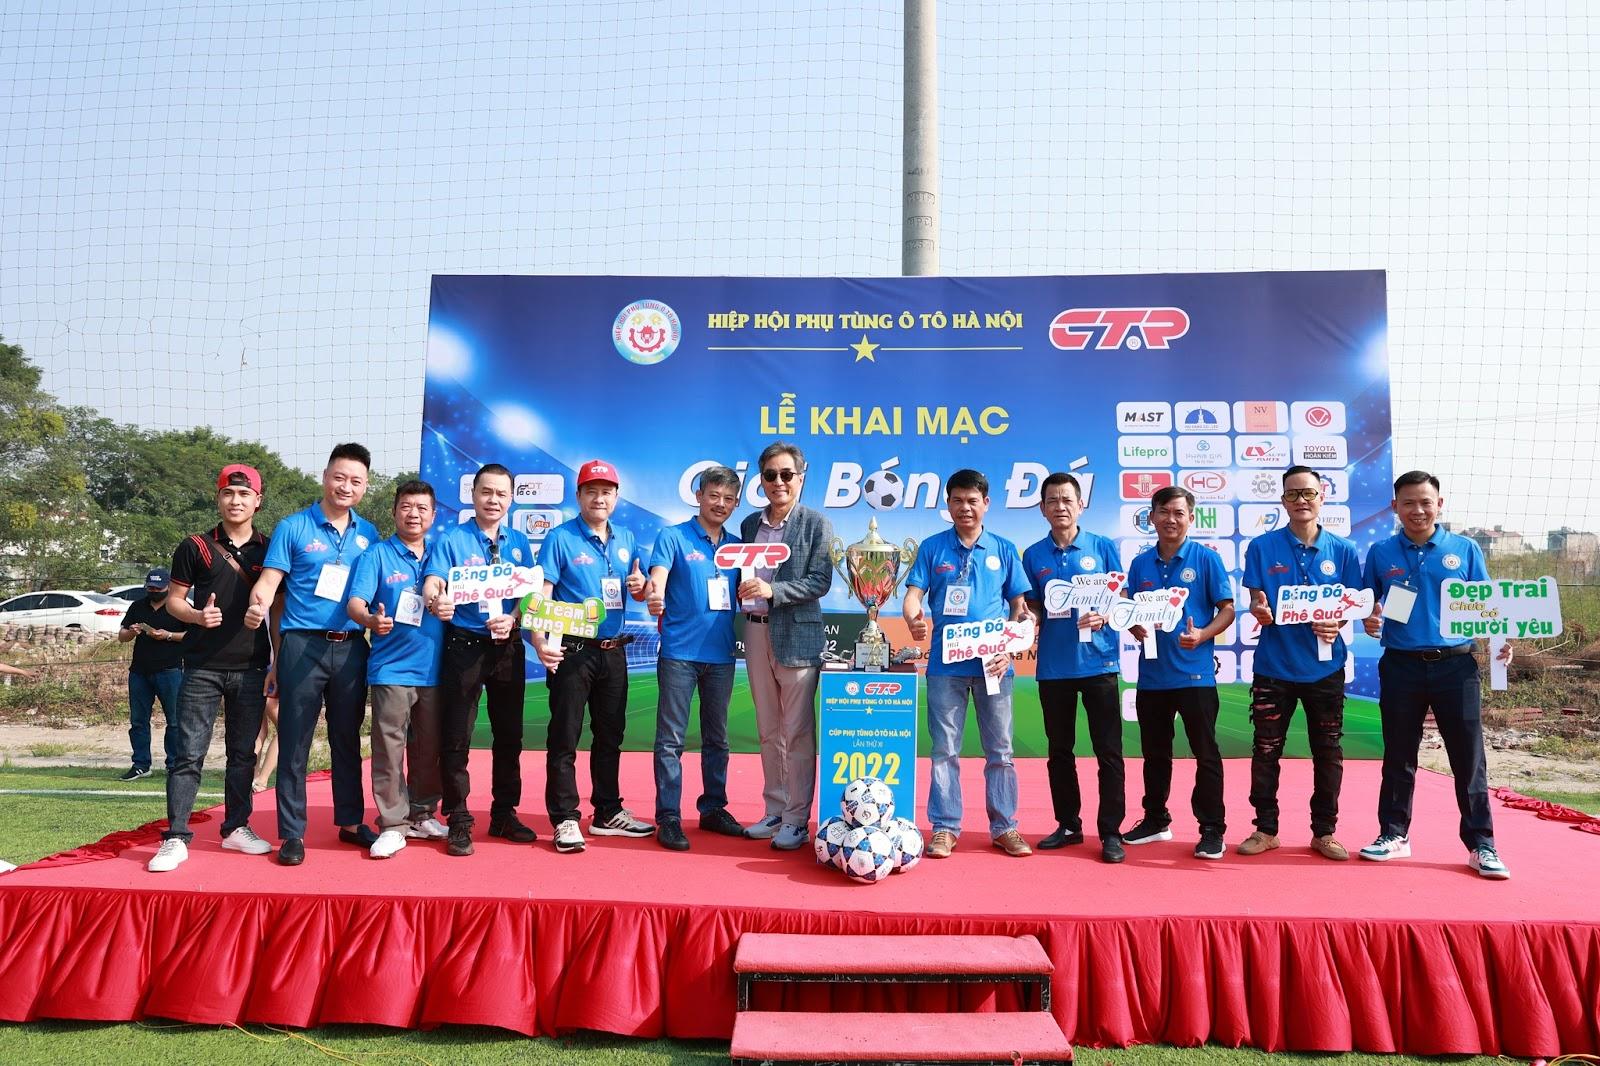 Giải bóng đá Hiệp hội phụ tùng Ô tô lần thứ XI năm 2022 cùng FC Mast